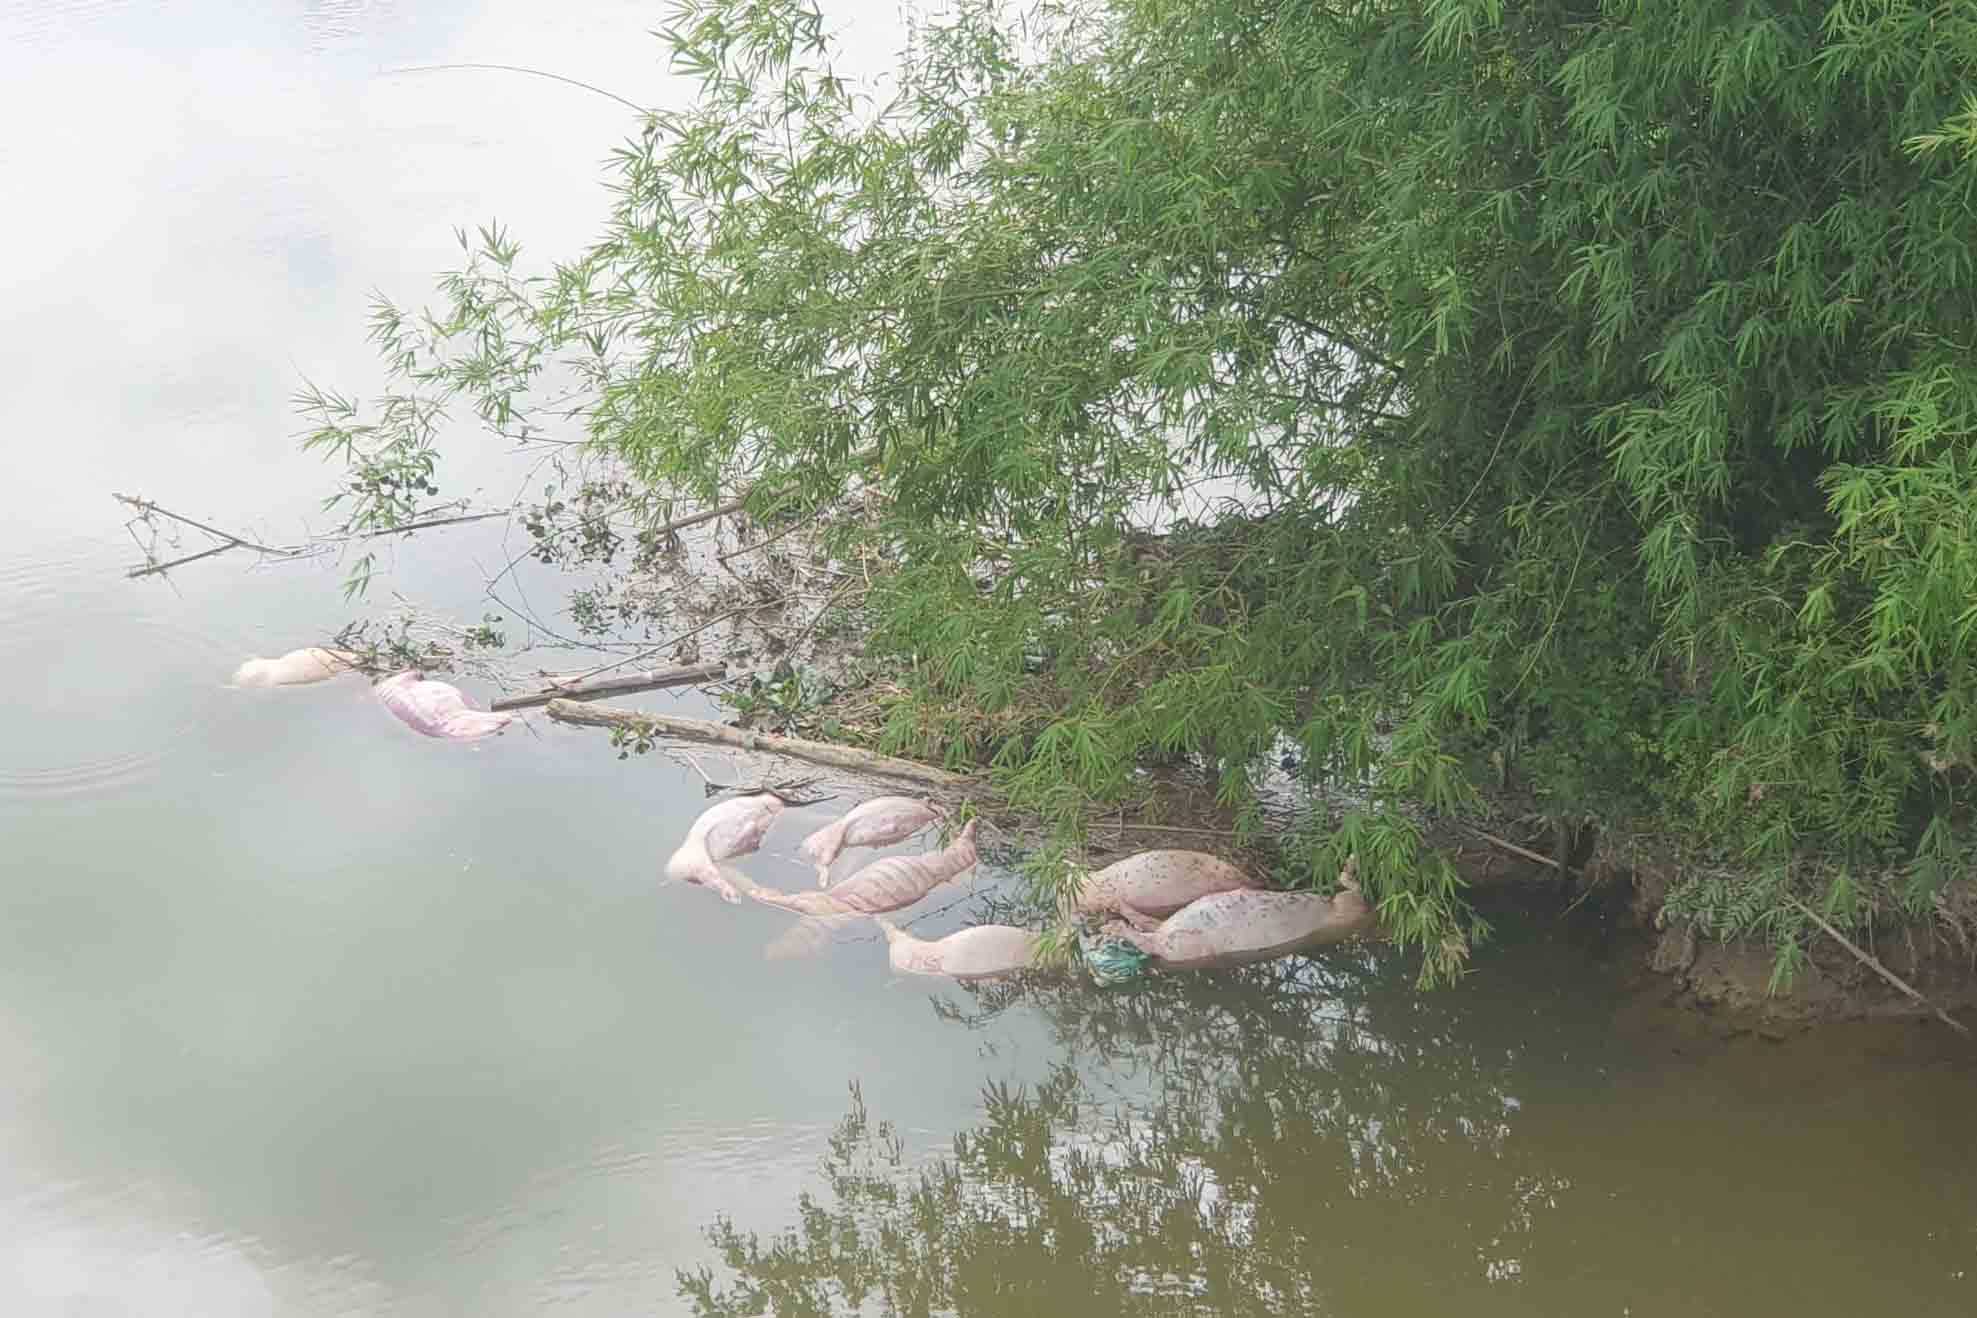 Hiện lượng chức năng đã vớt và tiêu hủy số lợn chết này, đồng thời đang điều tra truy tìm đối tượng thả số lợn chết này ra môi trường. Ảnh: Quang Tuấn.